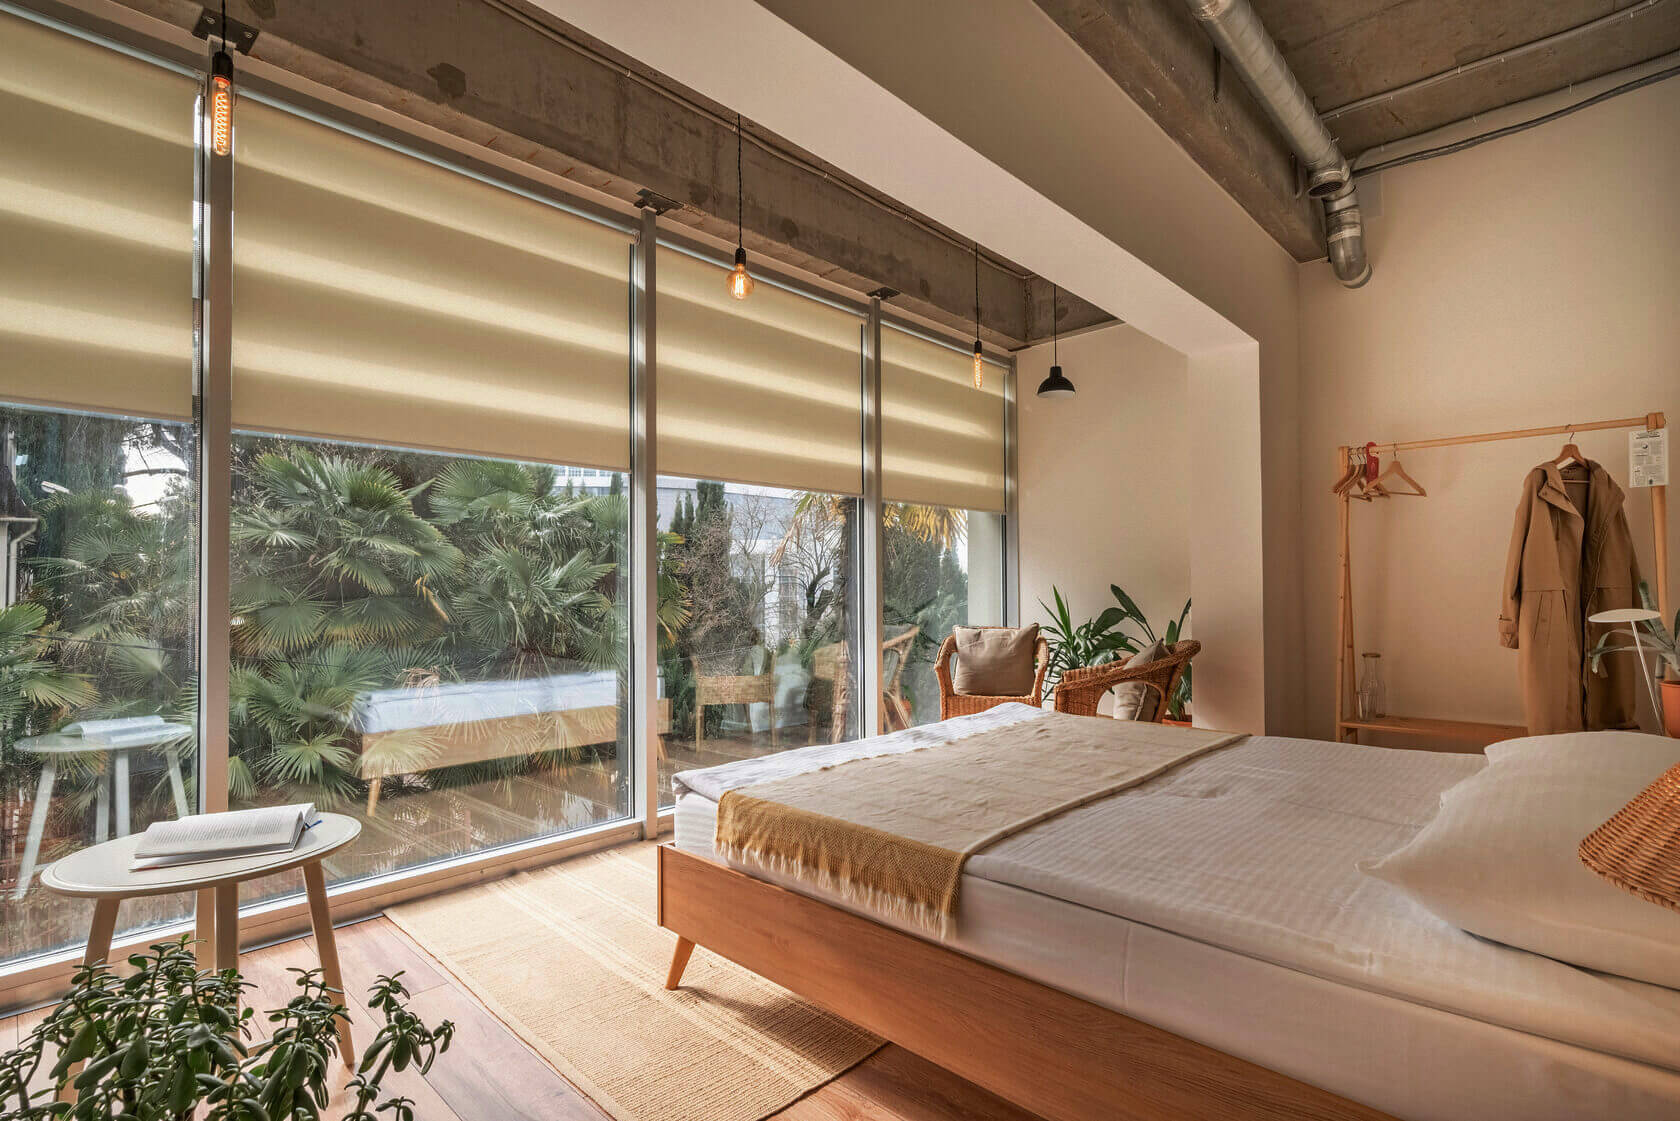 Кровать установлена у окна с видом на тропический сад.